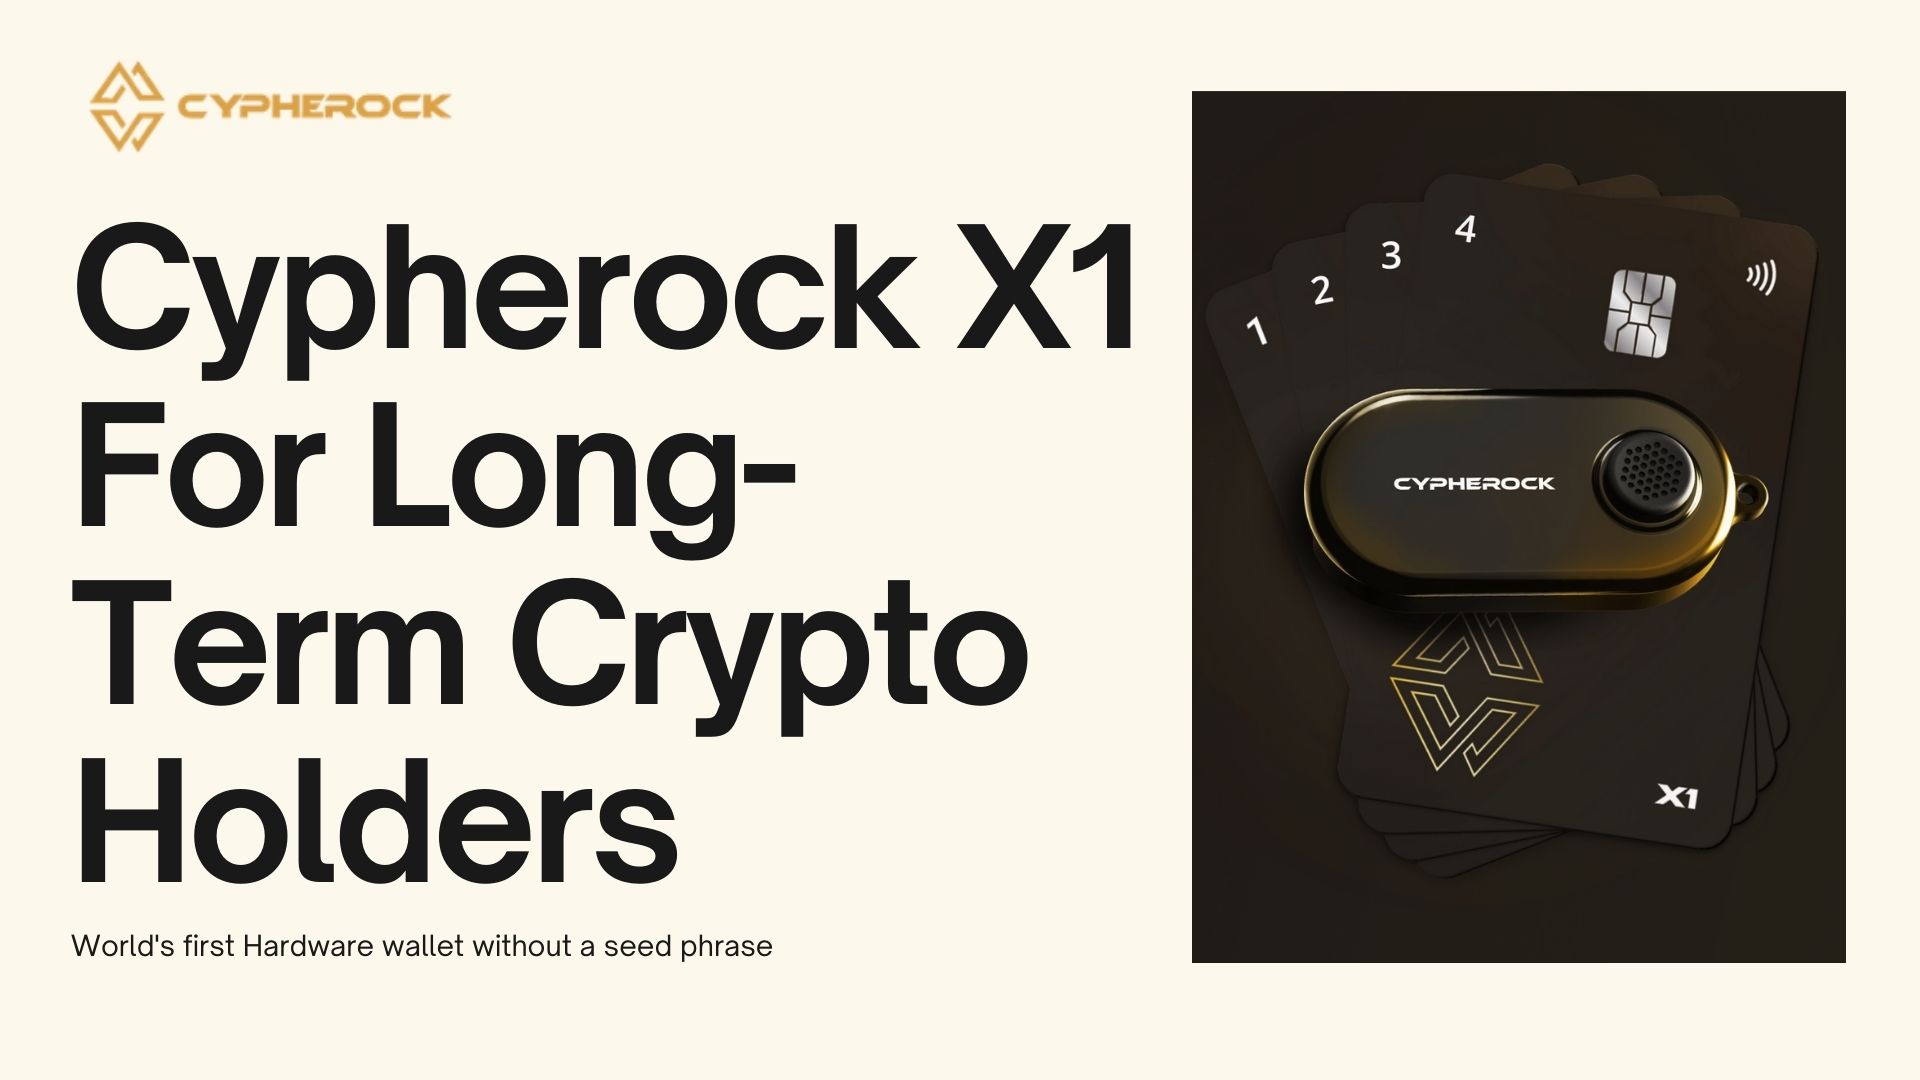 How Cypherock X1 Enhances Security for Long-Term Crypto Holders